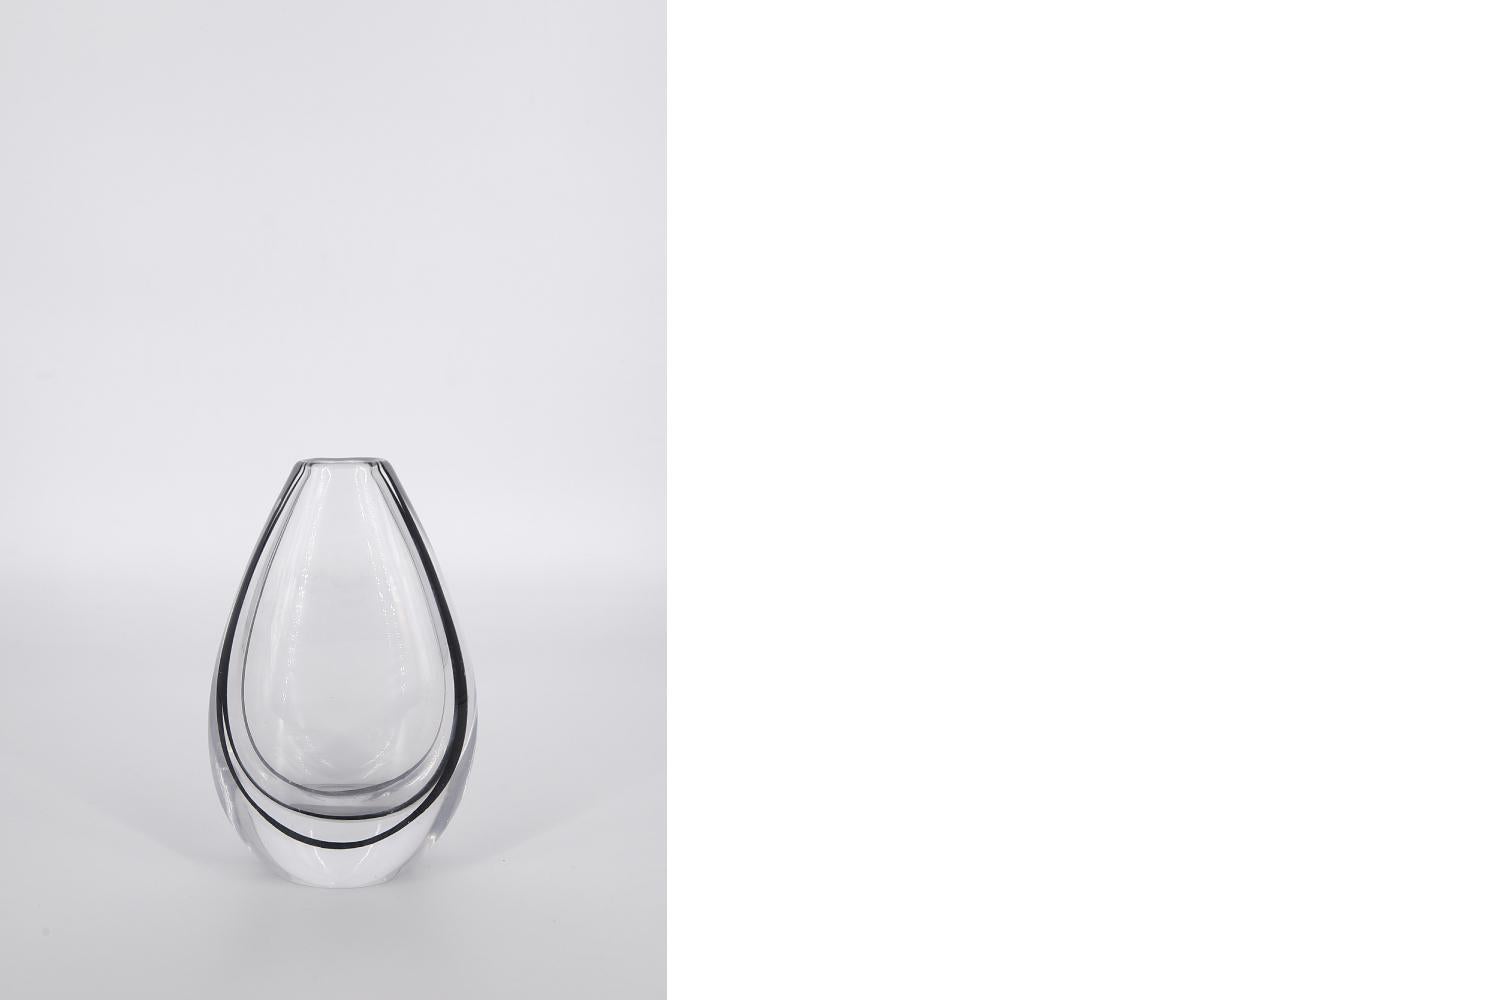 Ce vase en verre de la série Contour a été conçu par Vicke Lindstrand pour la verrerie suédoise Kosta Glasbruk dans les années 1950. Il est fabriqué en verre de cristal clair de haute qualité avec une ligne marron foncé à l'intérieur du vase. Le